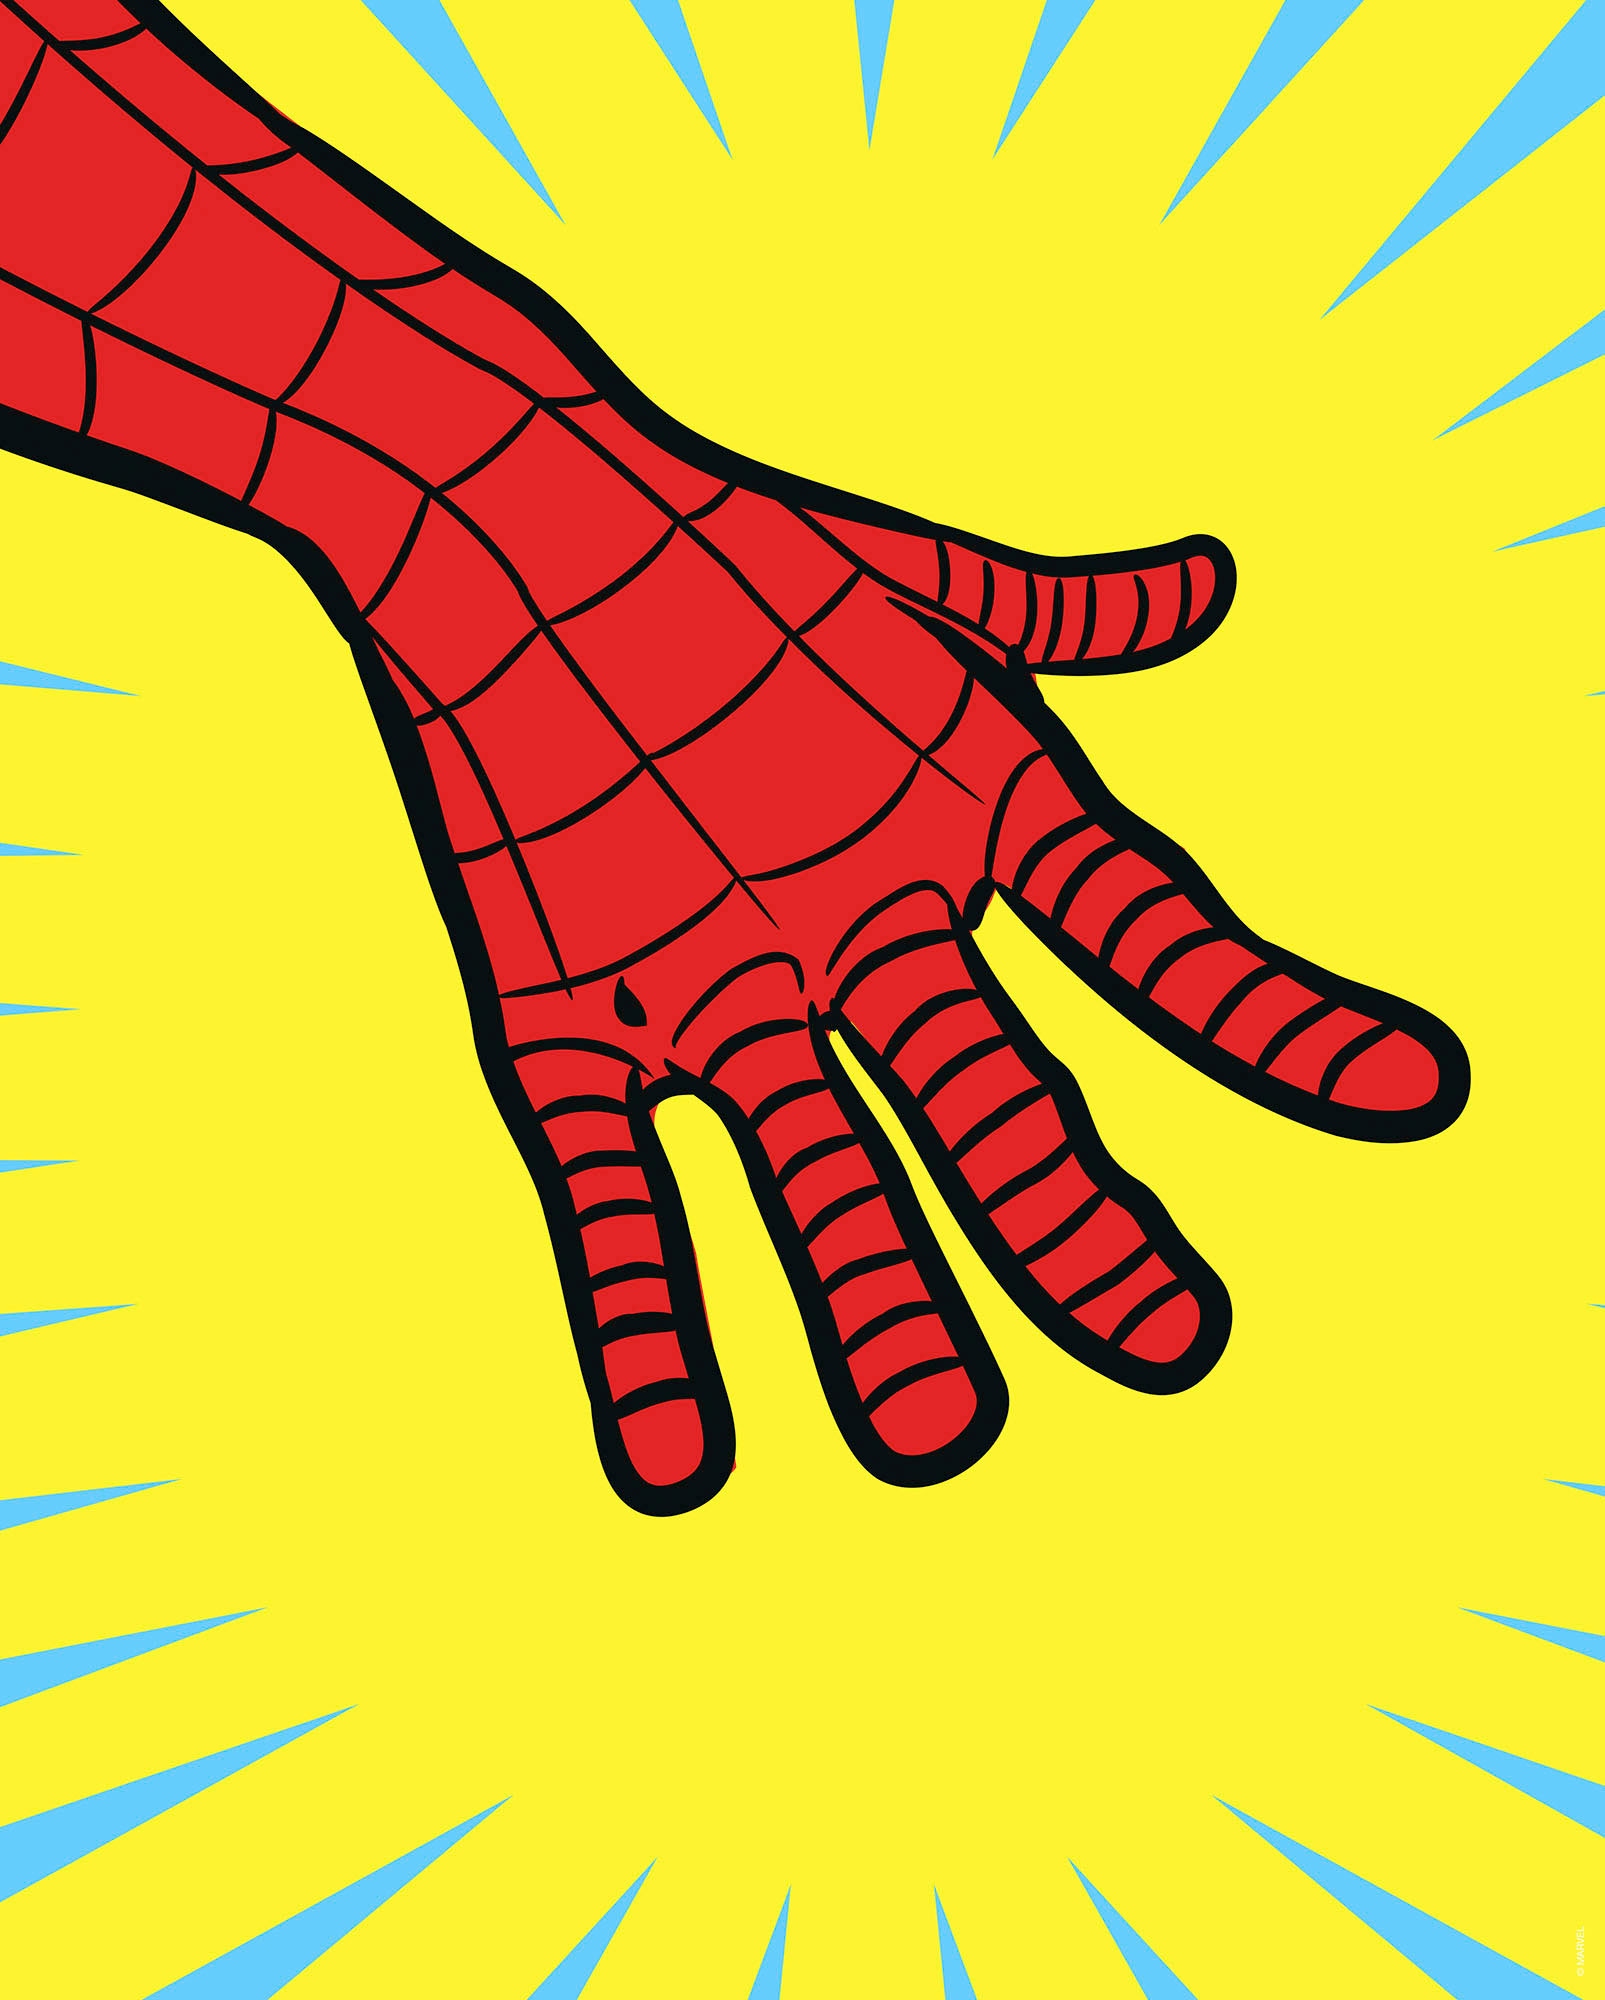 Komar Wandbild »Marvel PowerUp Spider-Man Hand«, (1 St.), Deutsches Premium-Poster Fotopapier mit seidenmatter Oberfläche und hoher Lichtbeständigkeit. Für fotorealistische Drucke mit gestochen scharfen Details und hervorragender Farbbrillanz.